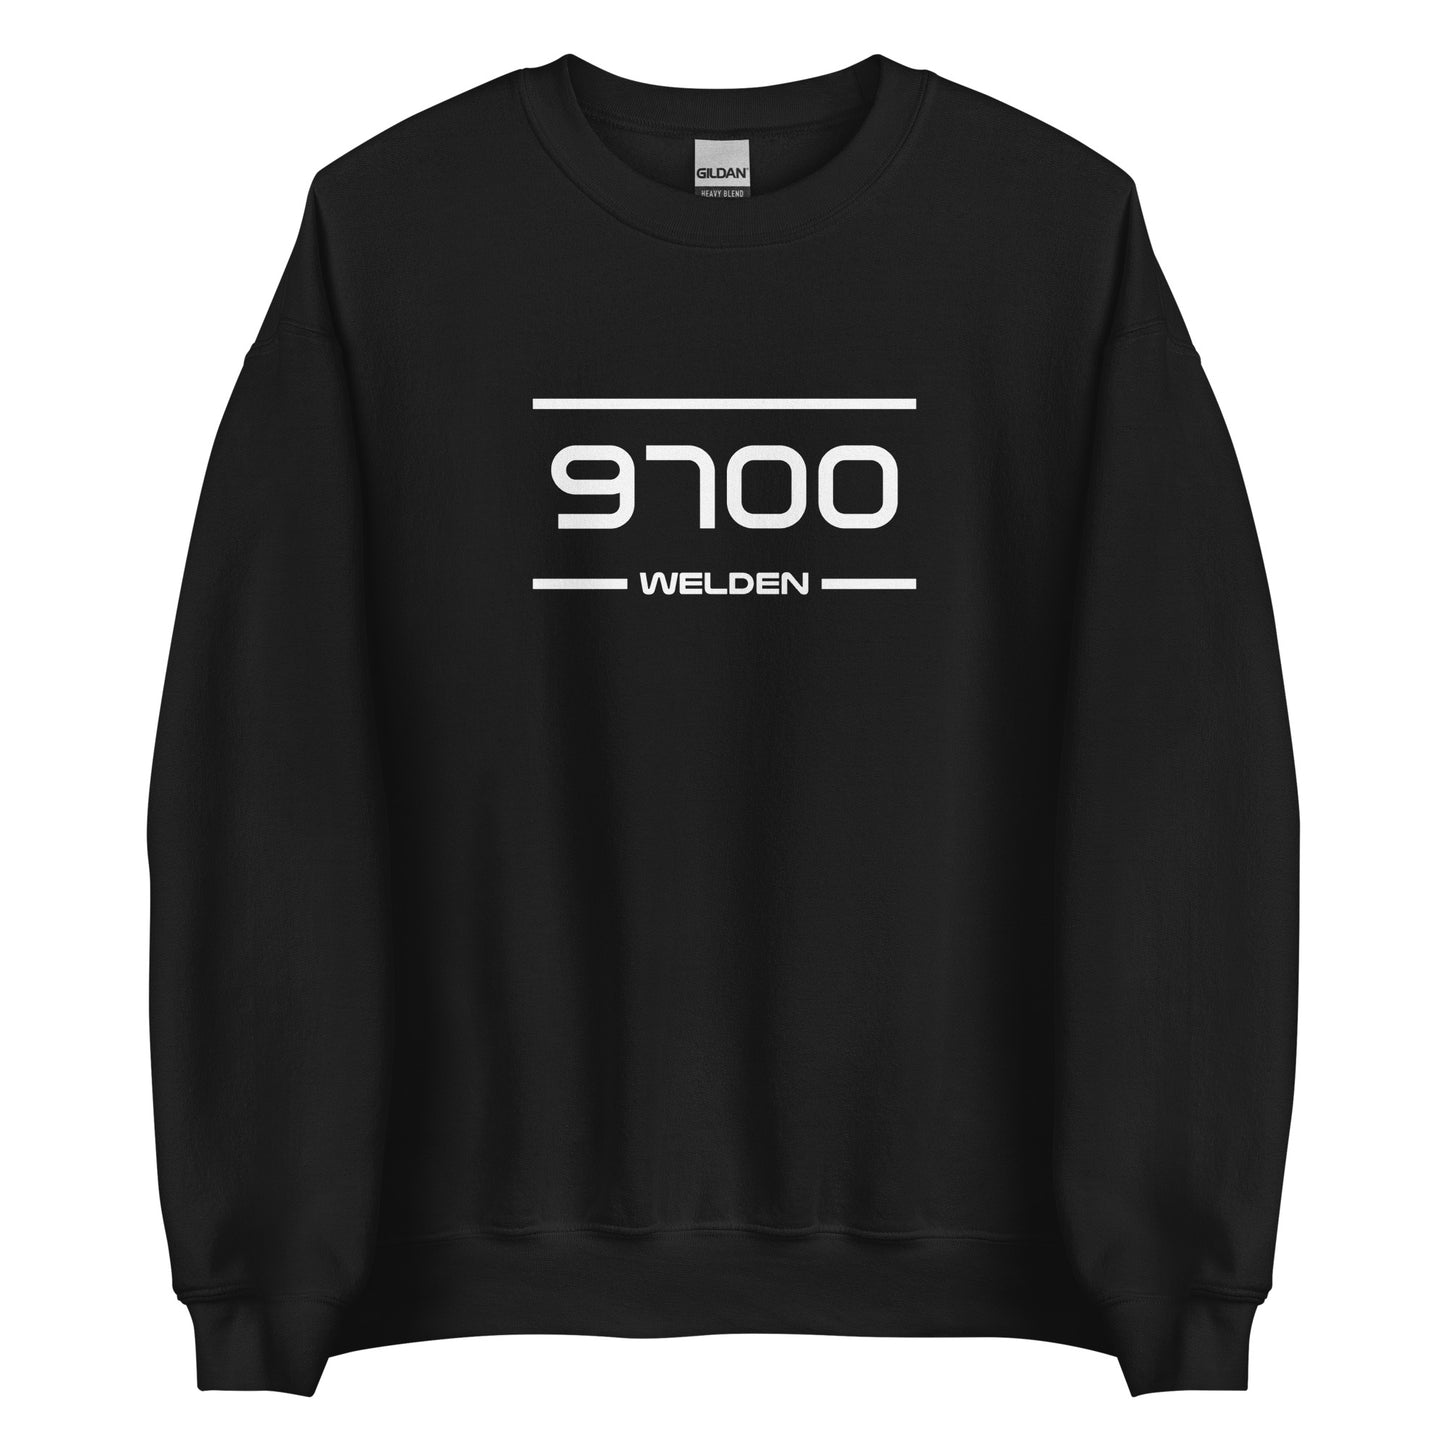 Sweater - 9700 - Welden (M/V)